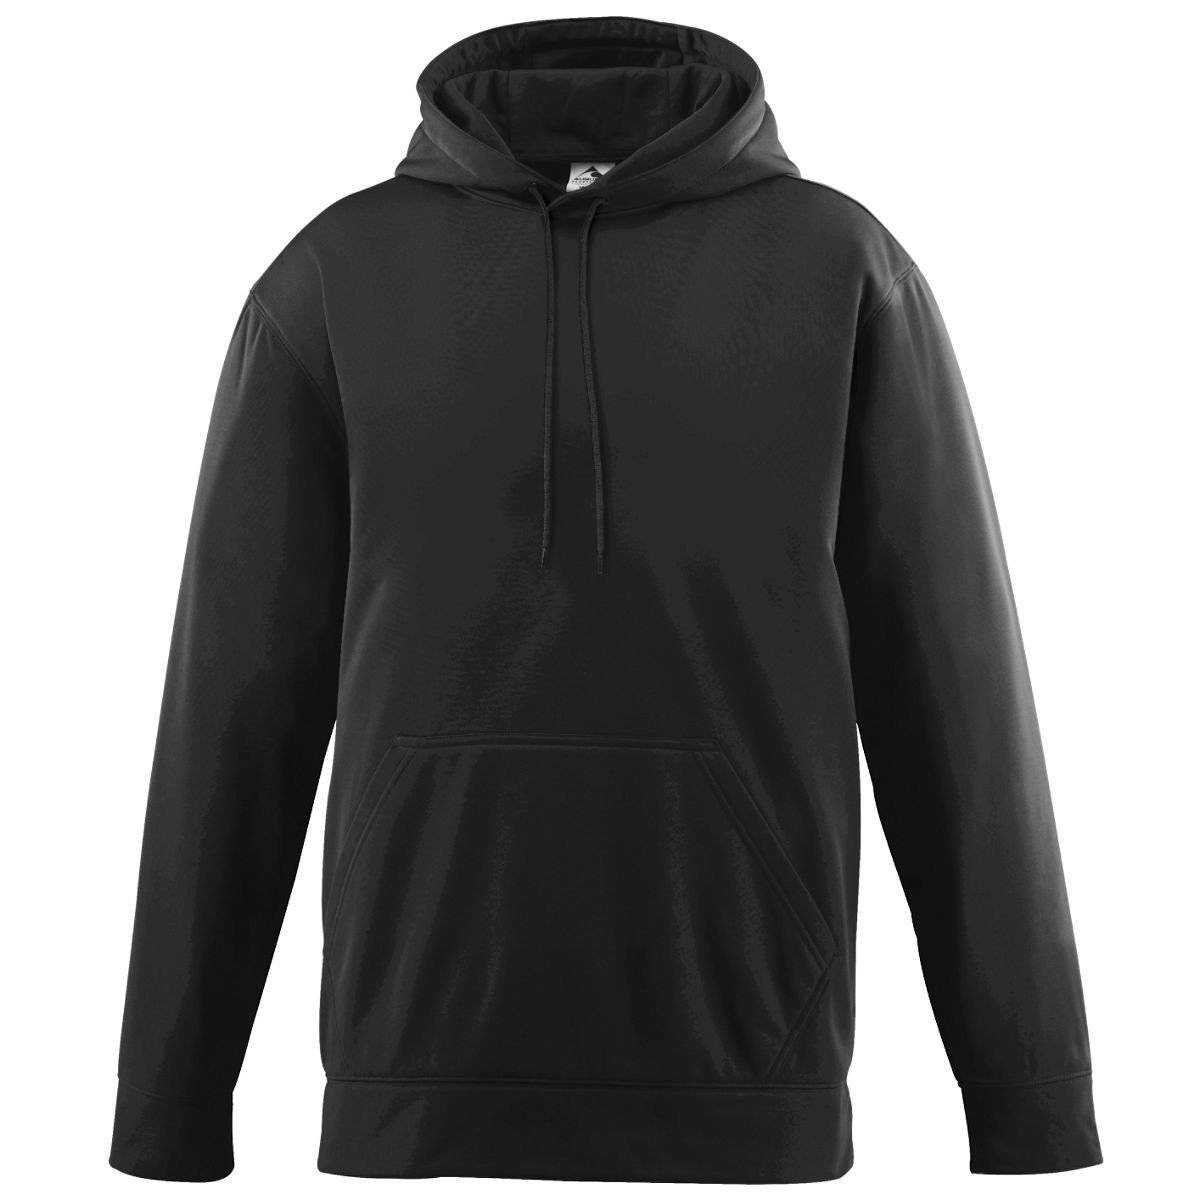 Augusta 5505 Wicking Fleece Hooded Sweatshirt - Black - HIT a Double